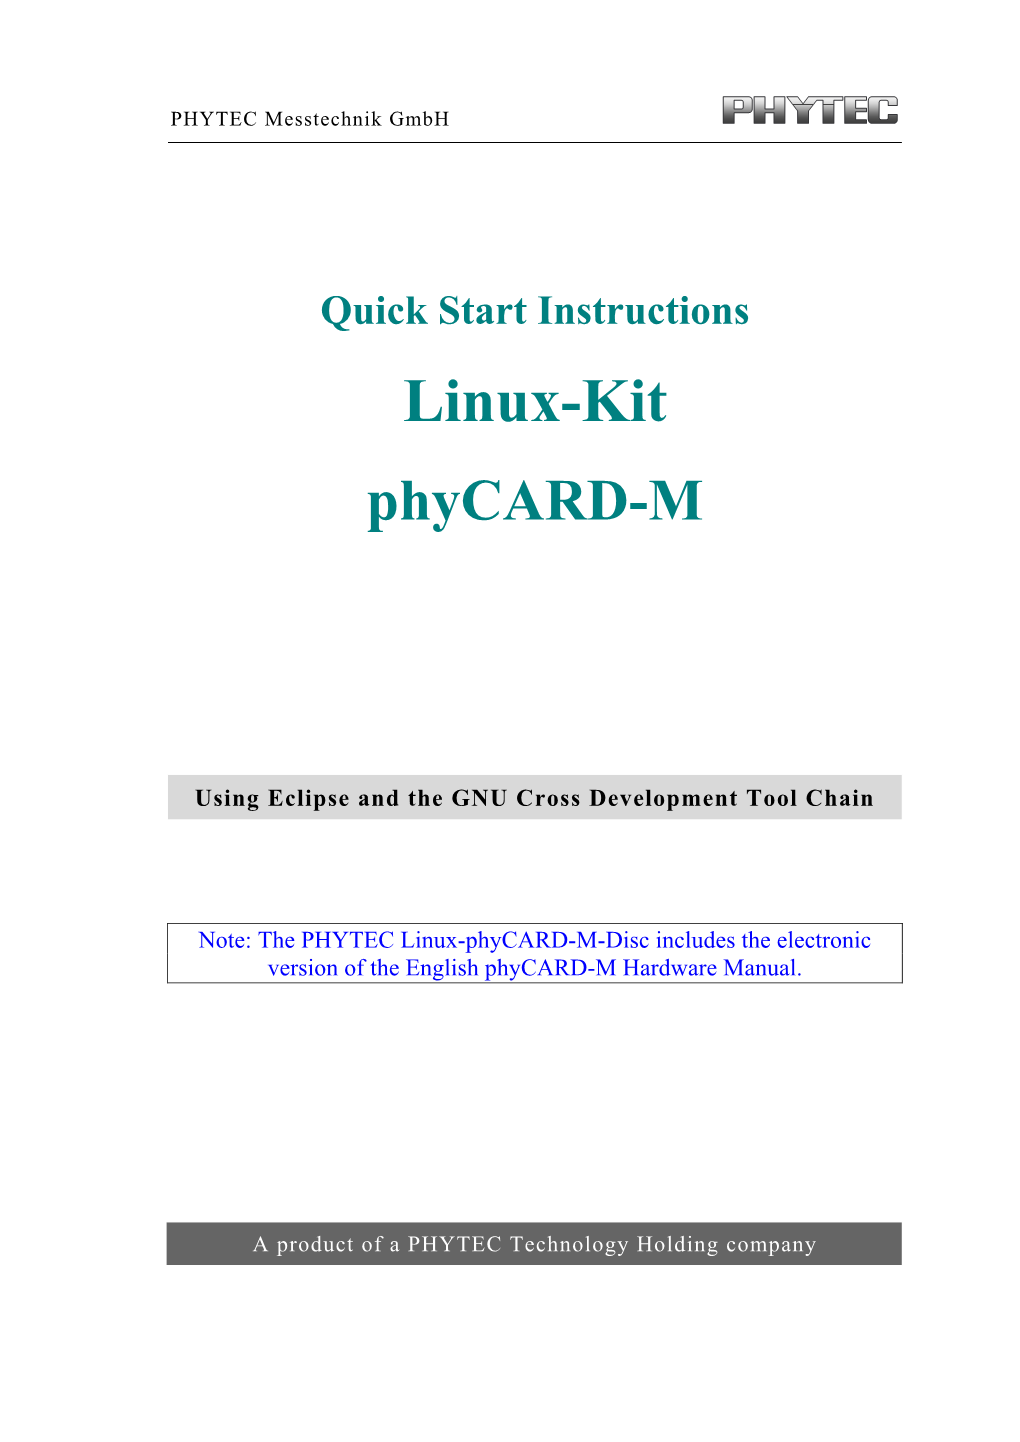 Linux-Kit Phycard-M